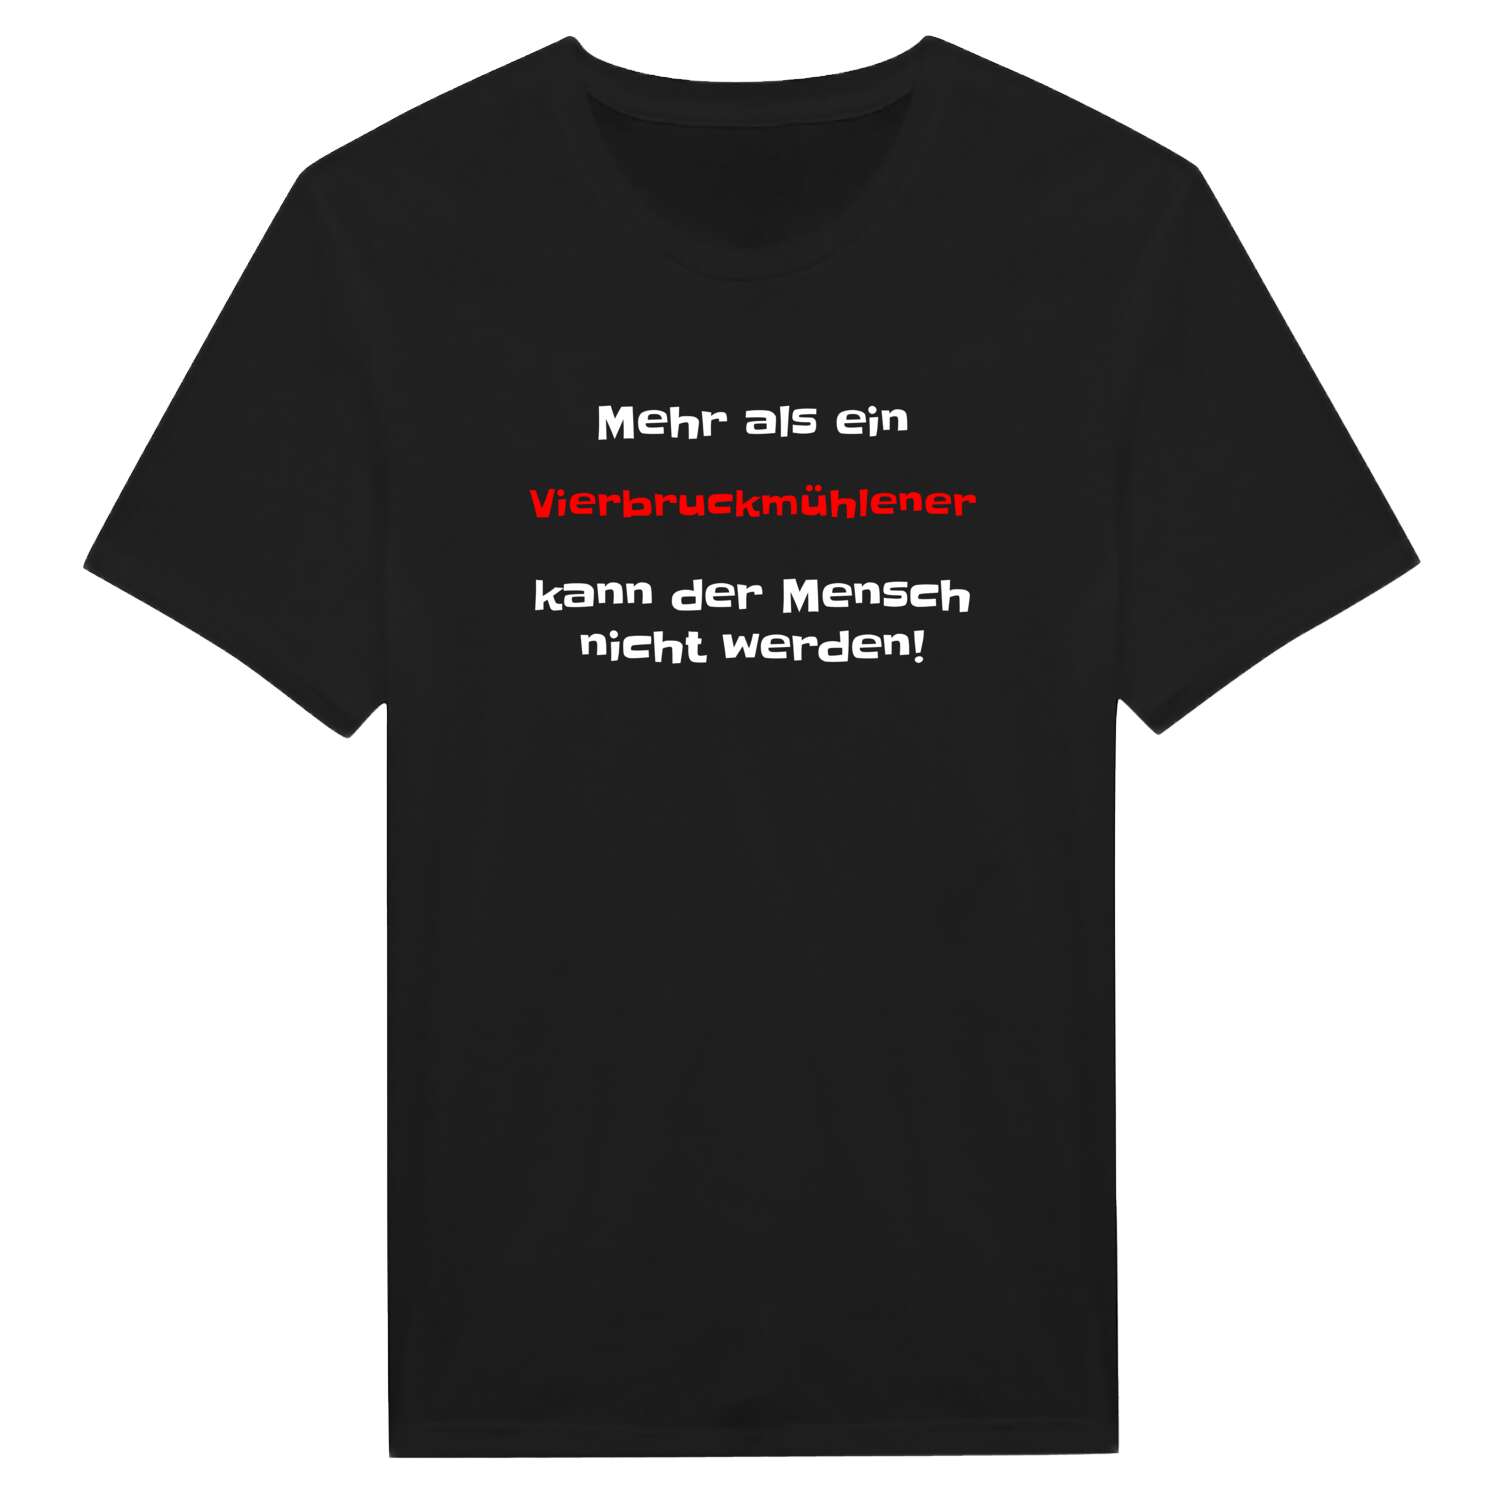 Vierbruckmühle T-Shirt »Mehr als ein«